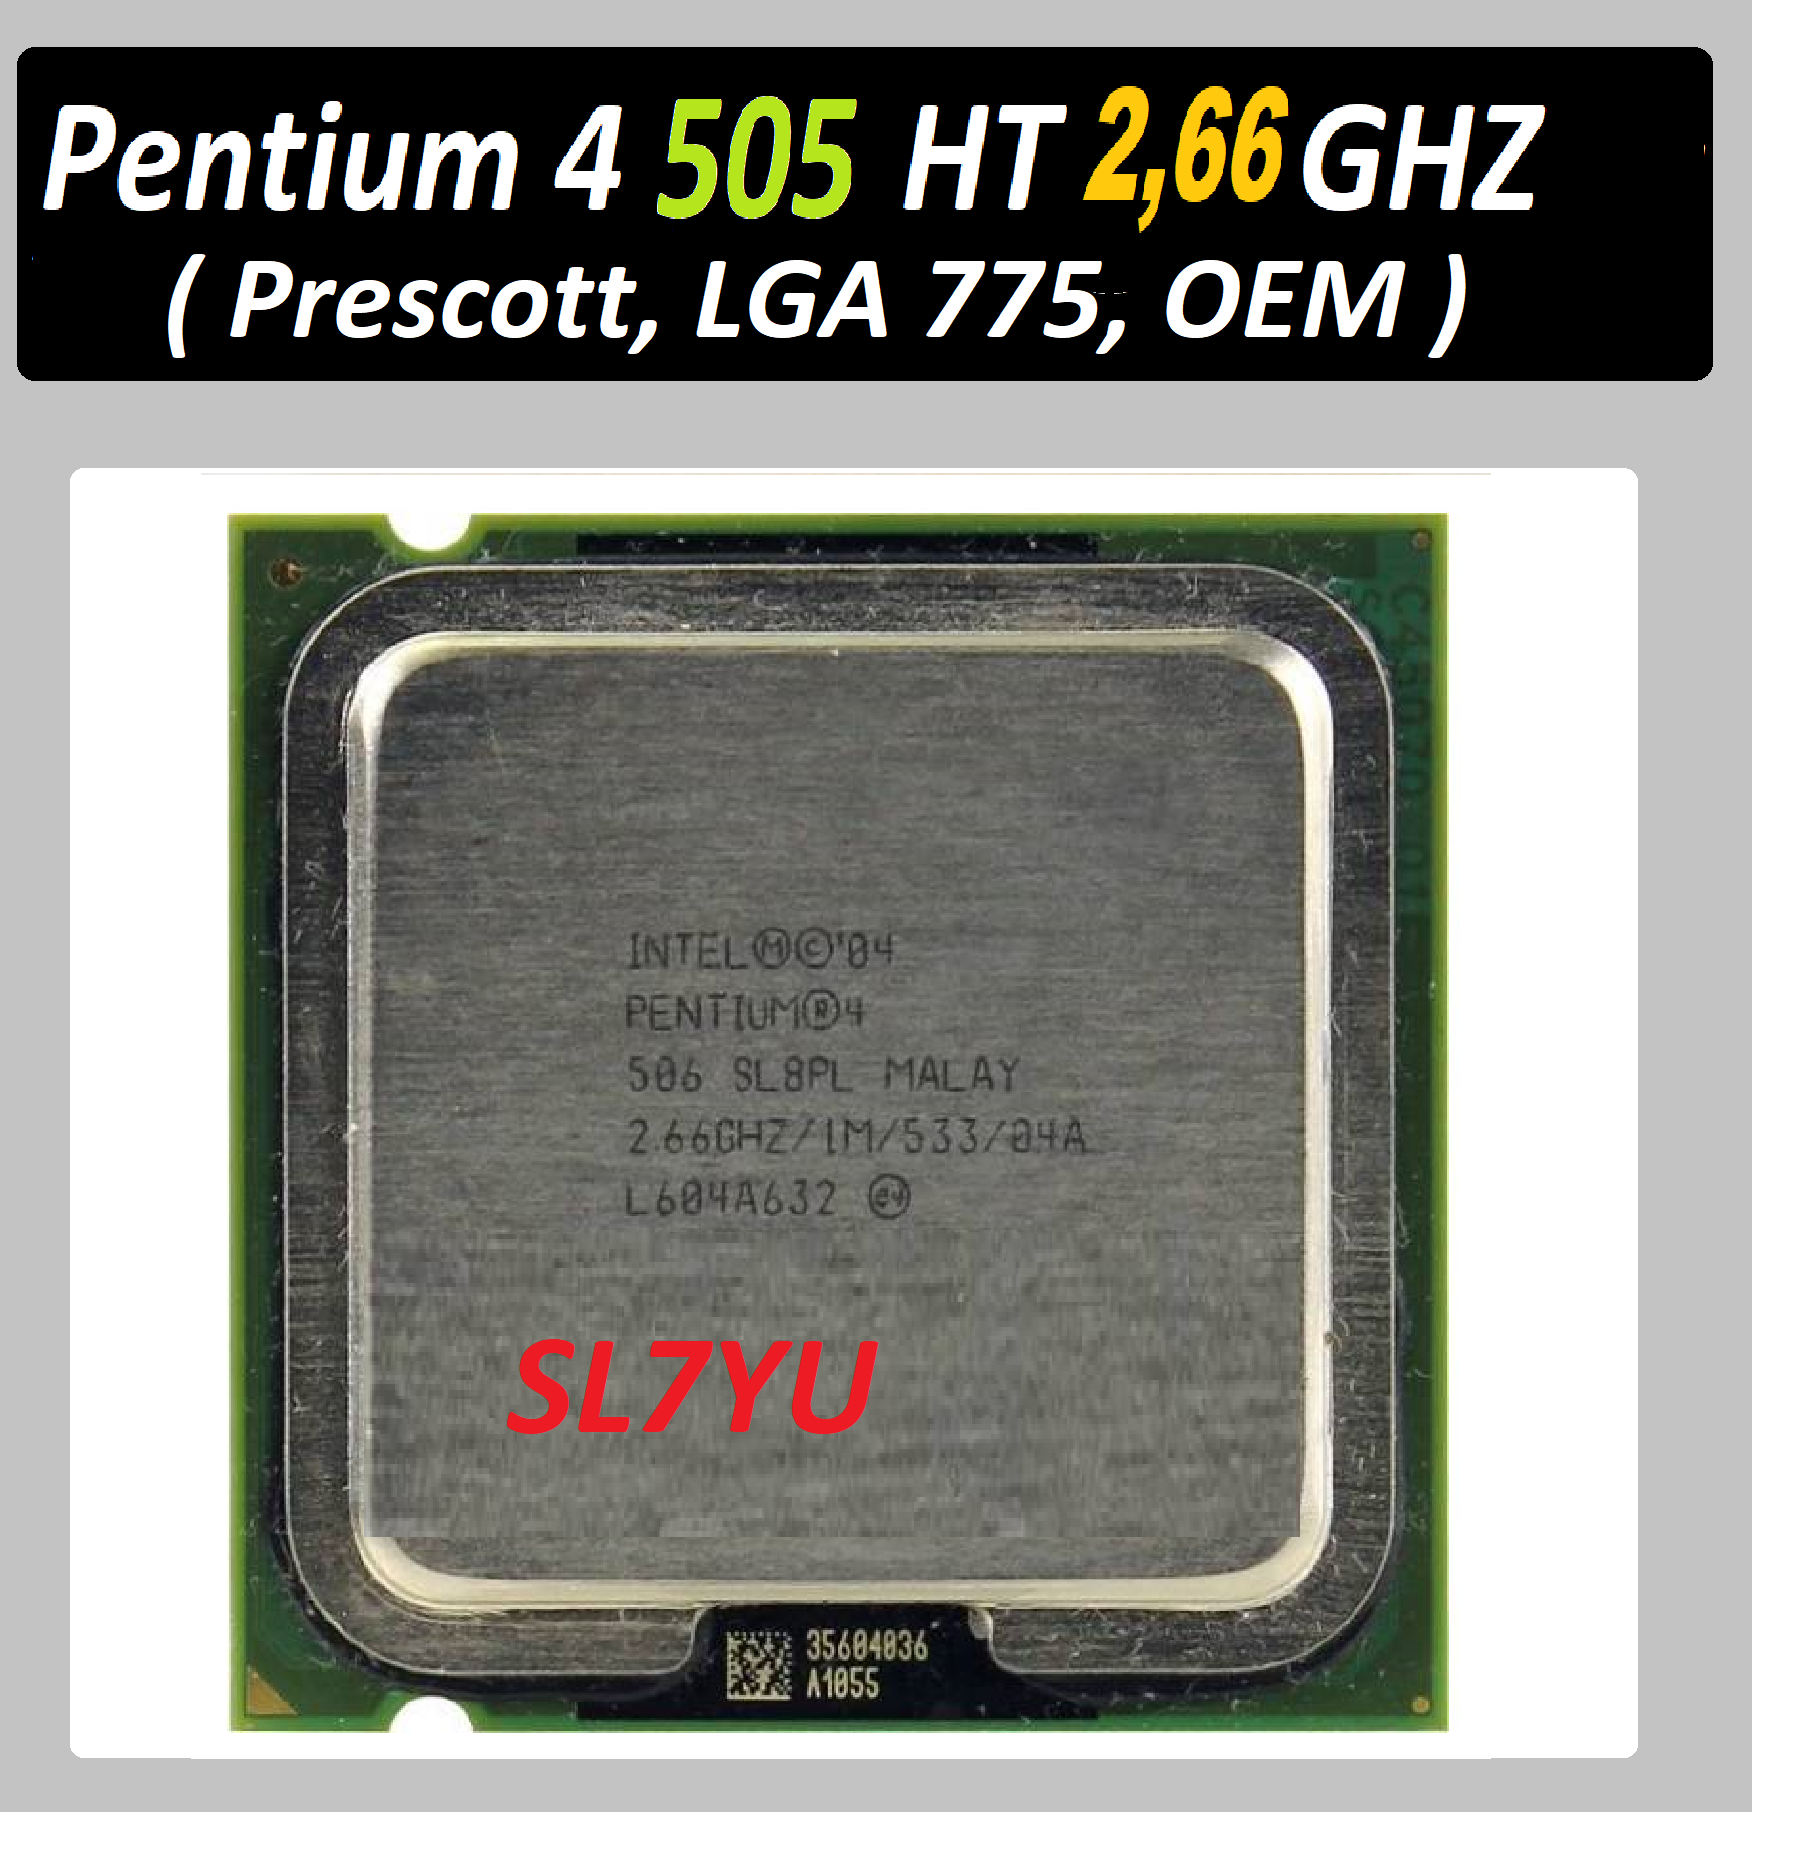 Intel Pentium 4 505 Prescott LGA775, 1 x 2667 МГц SL7YU